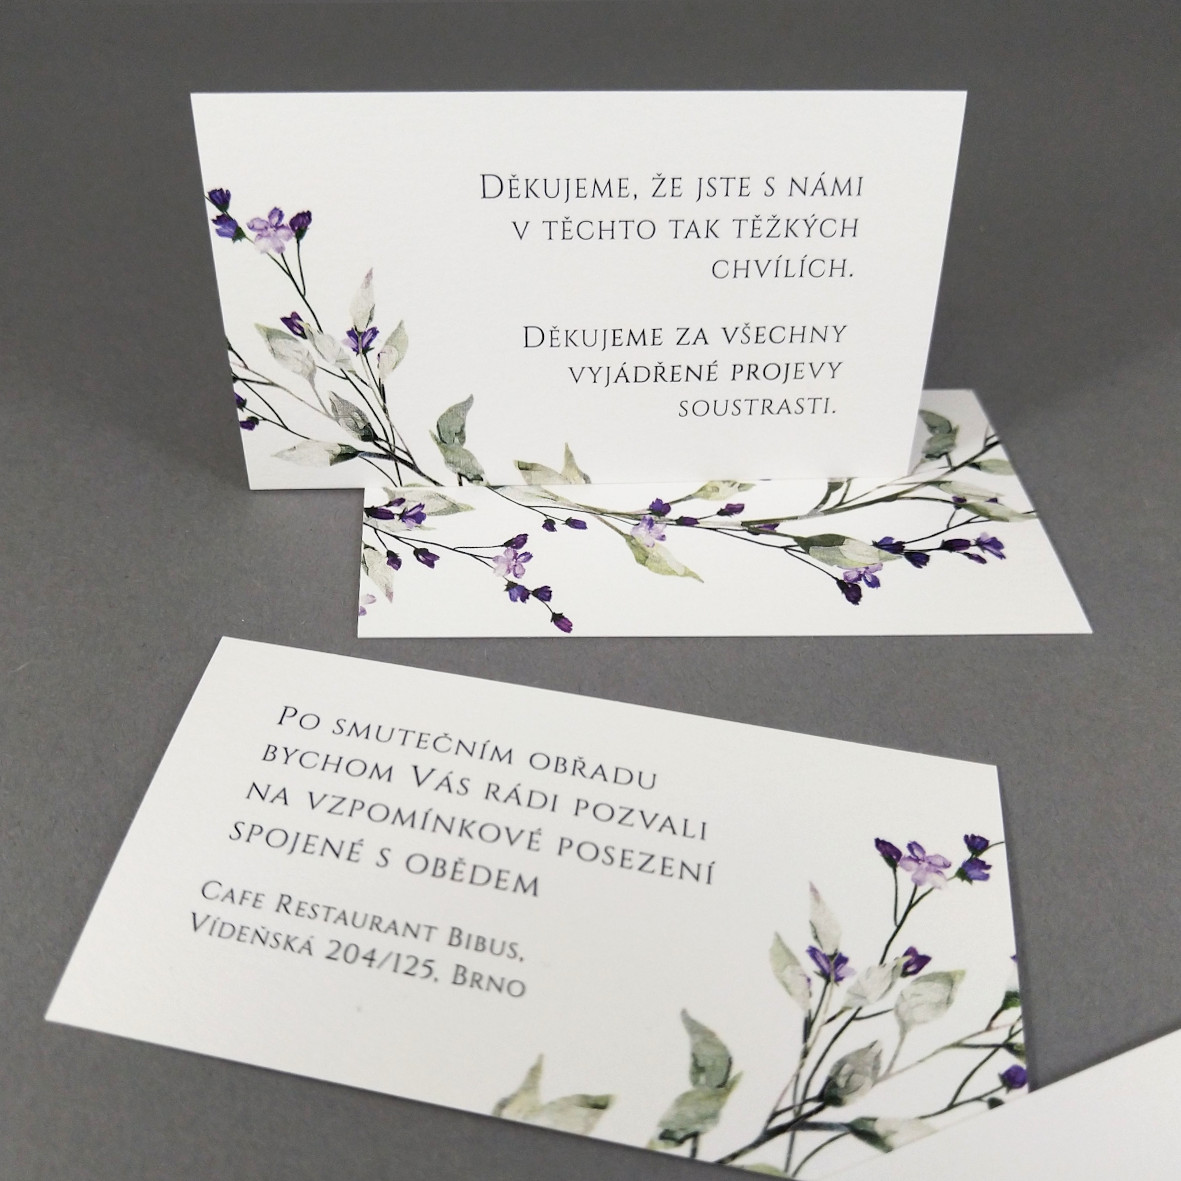 Pozvánka, informační karta – s motivem větvičky a drobných fialových květů, formát 85 × 55 mm, oboustranná